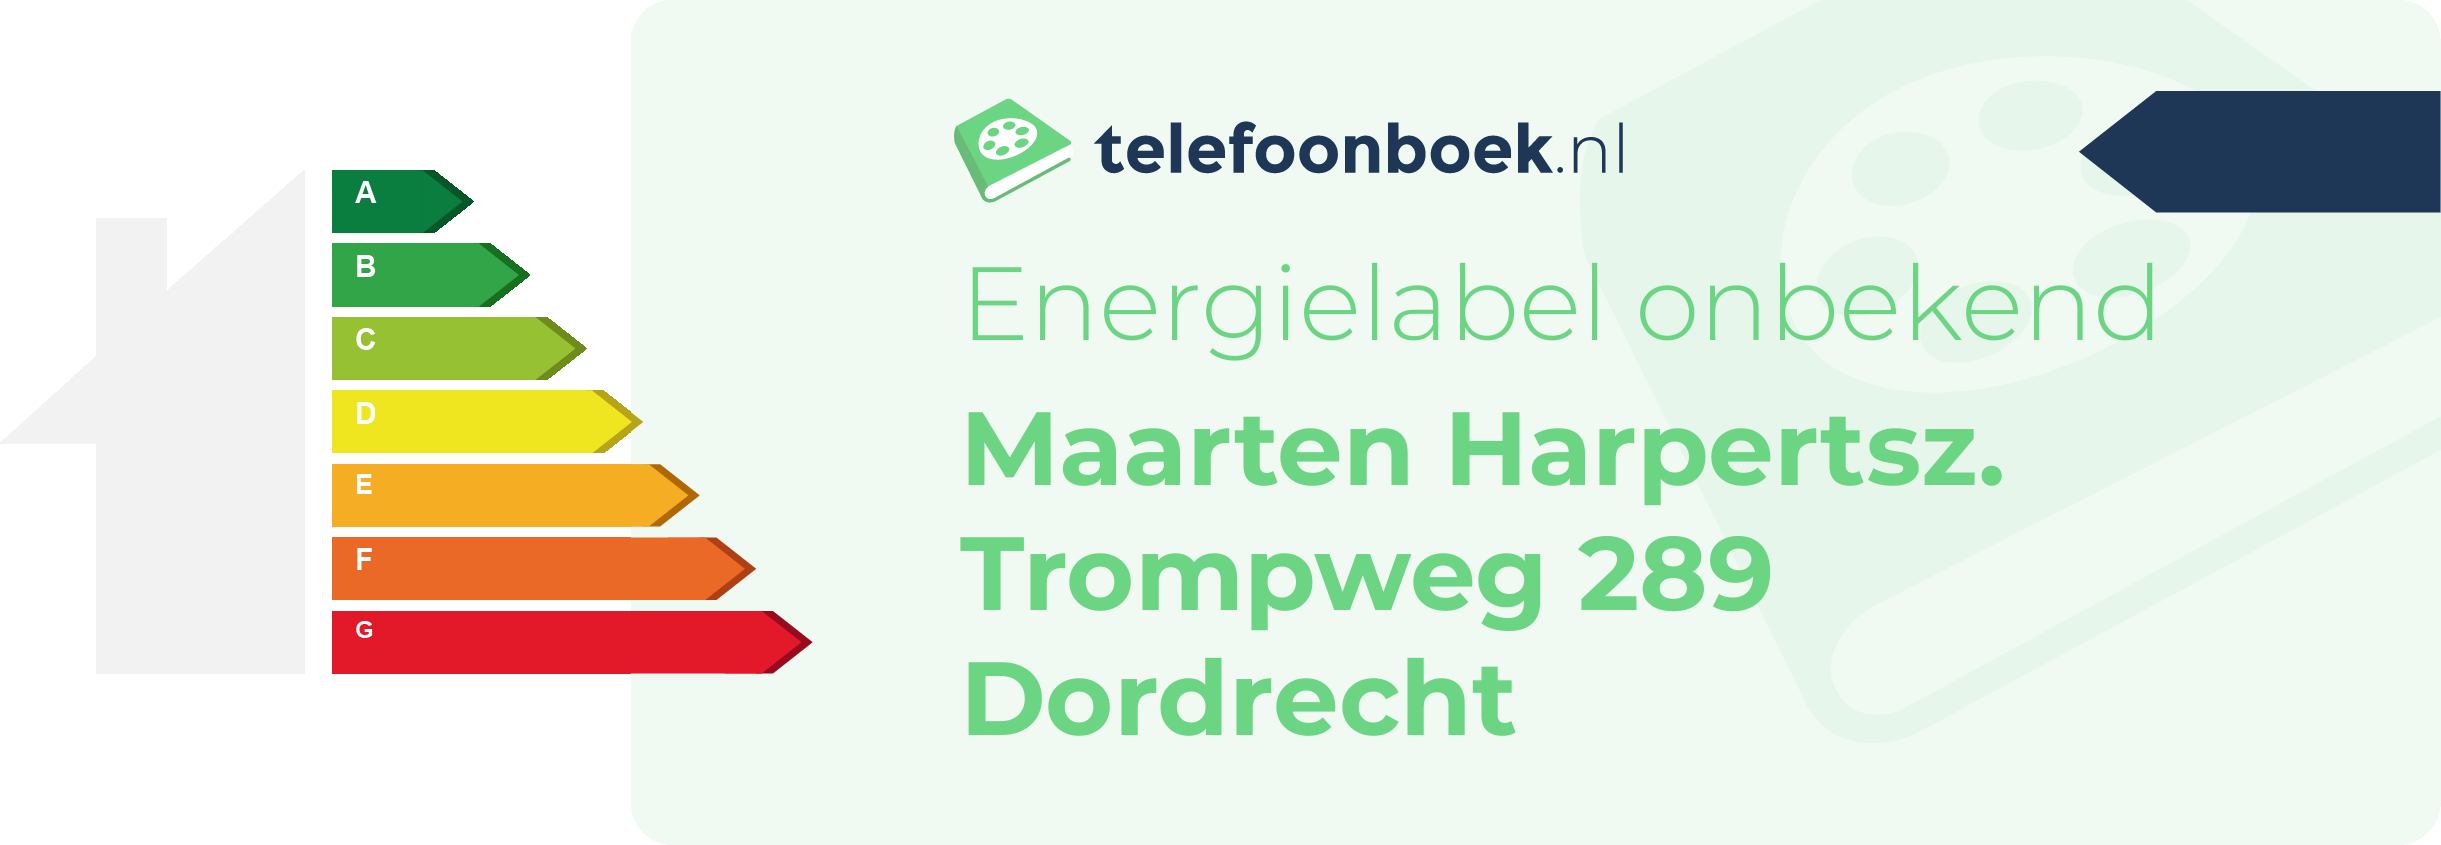 Energielabel Maarten Harpertsz. Trompweg 289 Dordrecht